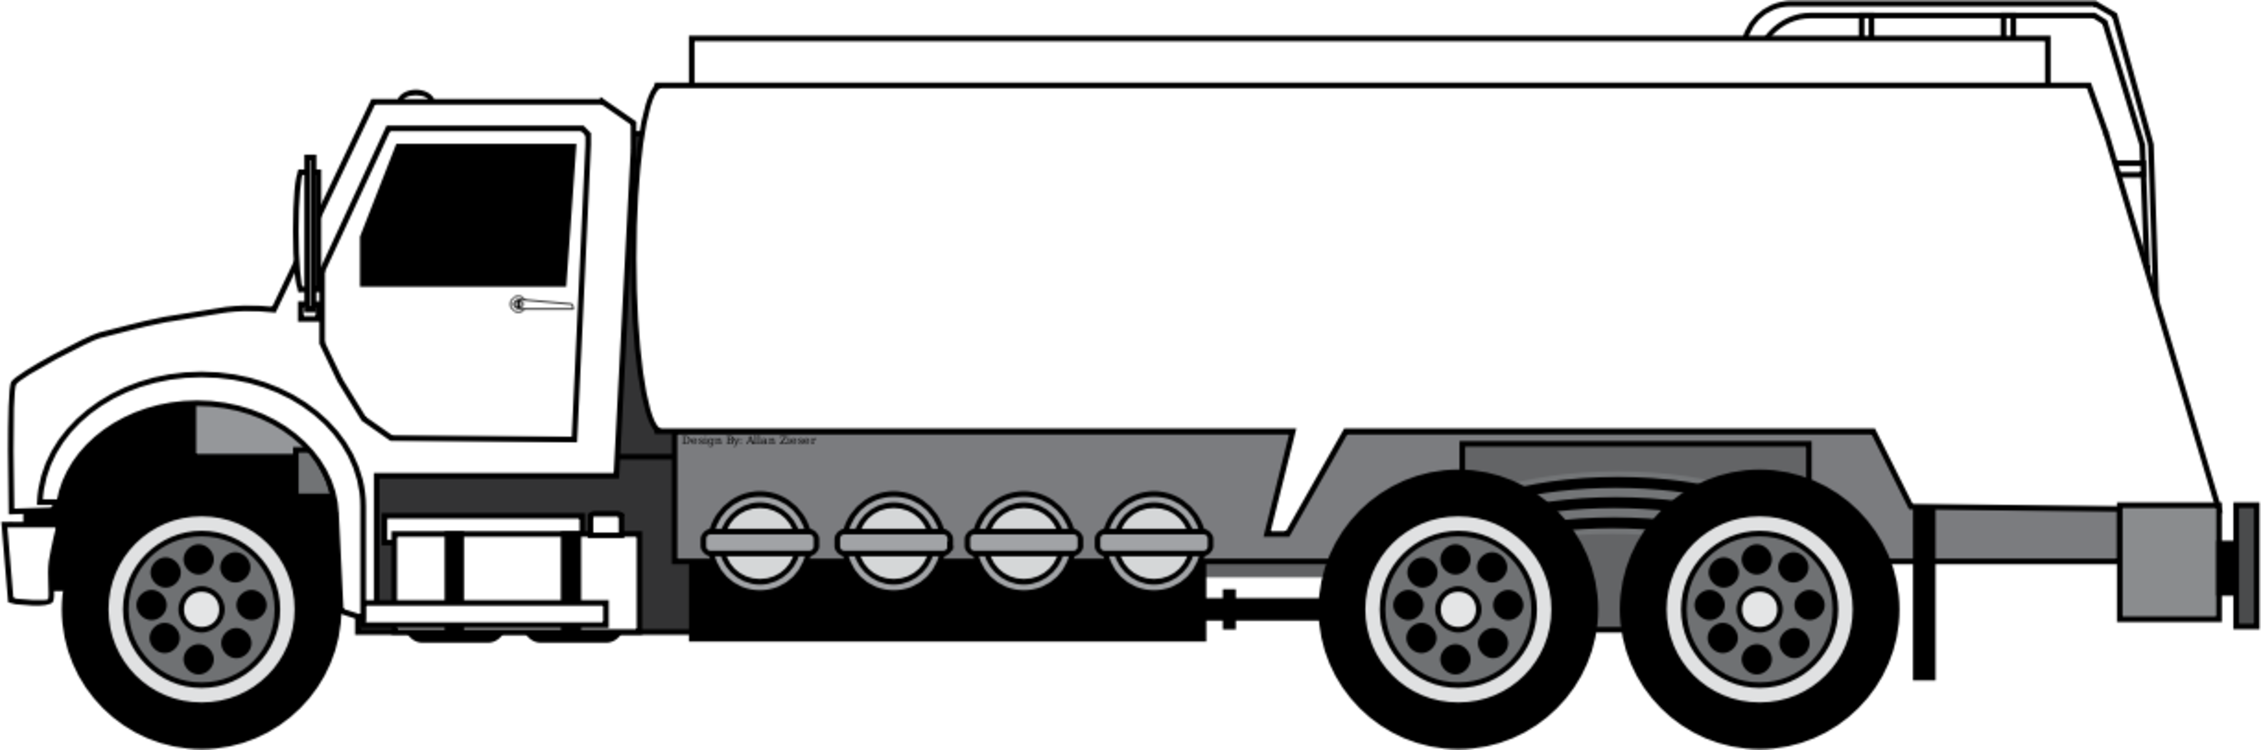 Car Tank Truck Semi-trailer Truck Storage Tank - Fuel Truck Clip Art (1025x340), Png Download